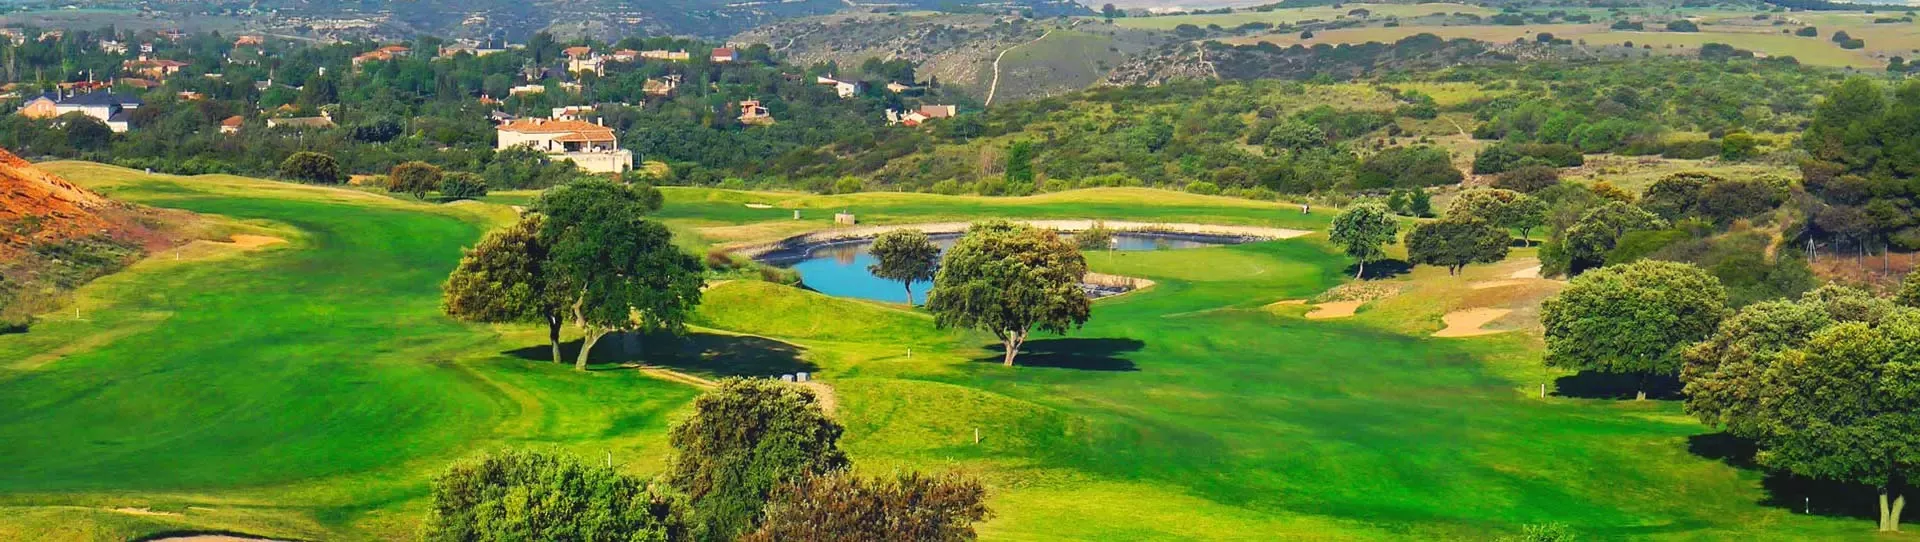 Spain golf courses - El Robledal Golf Course - Photo 2